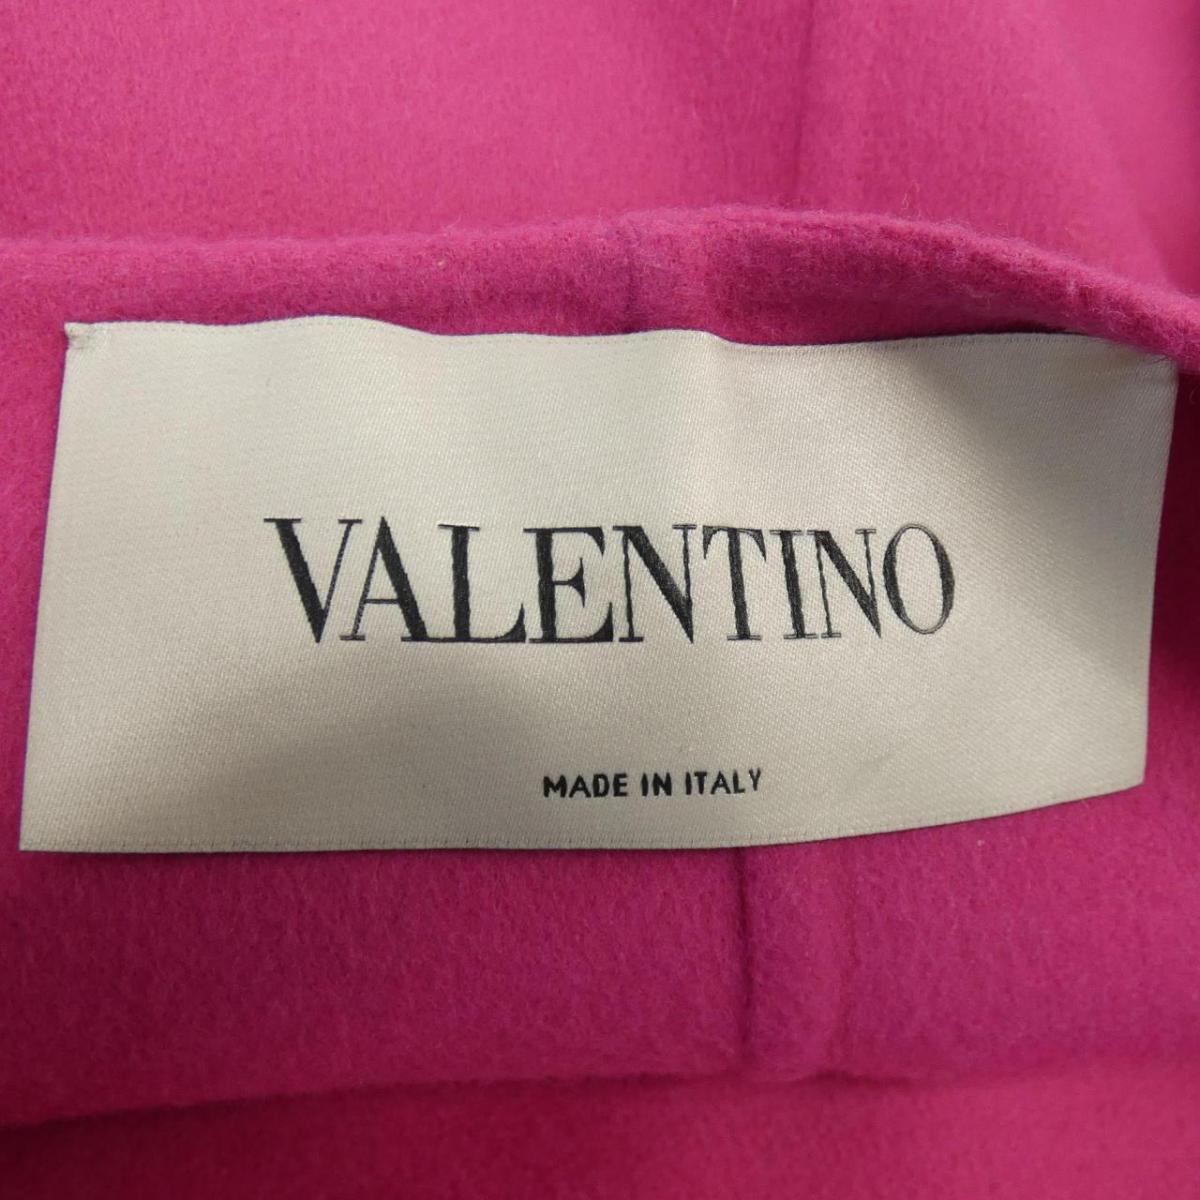 ヴァレンティノ Valentino made In Italy デニム | www.vinoflix.com